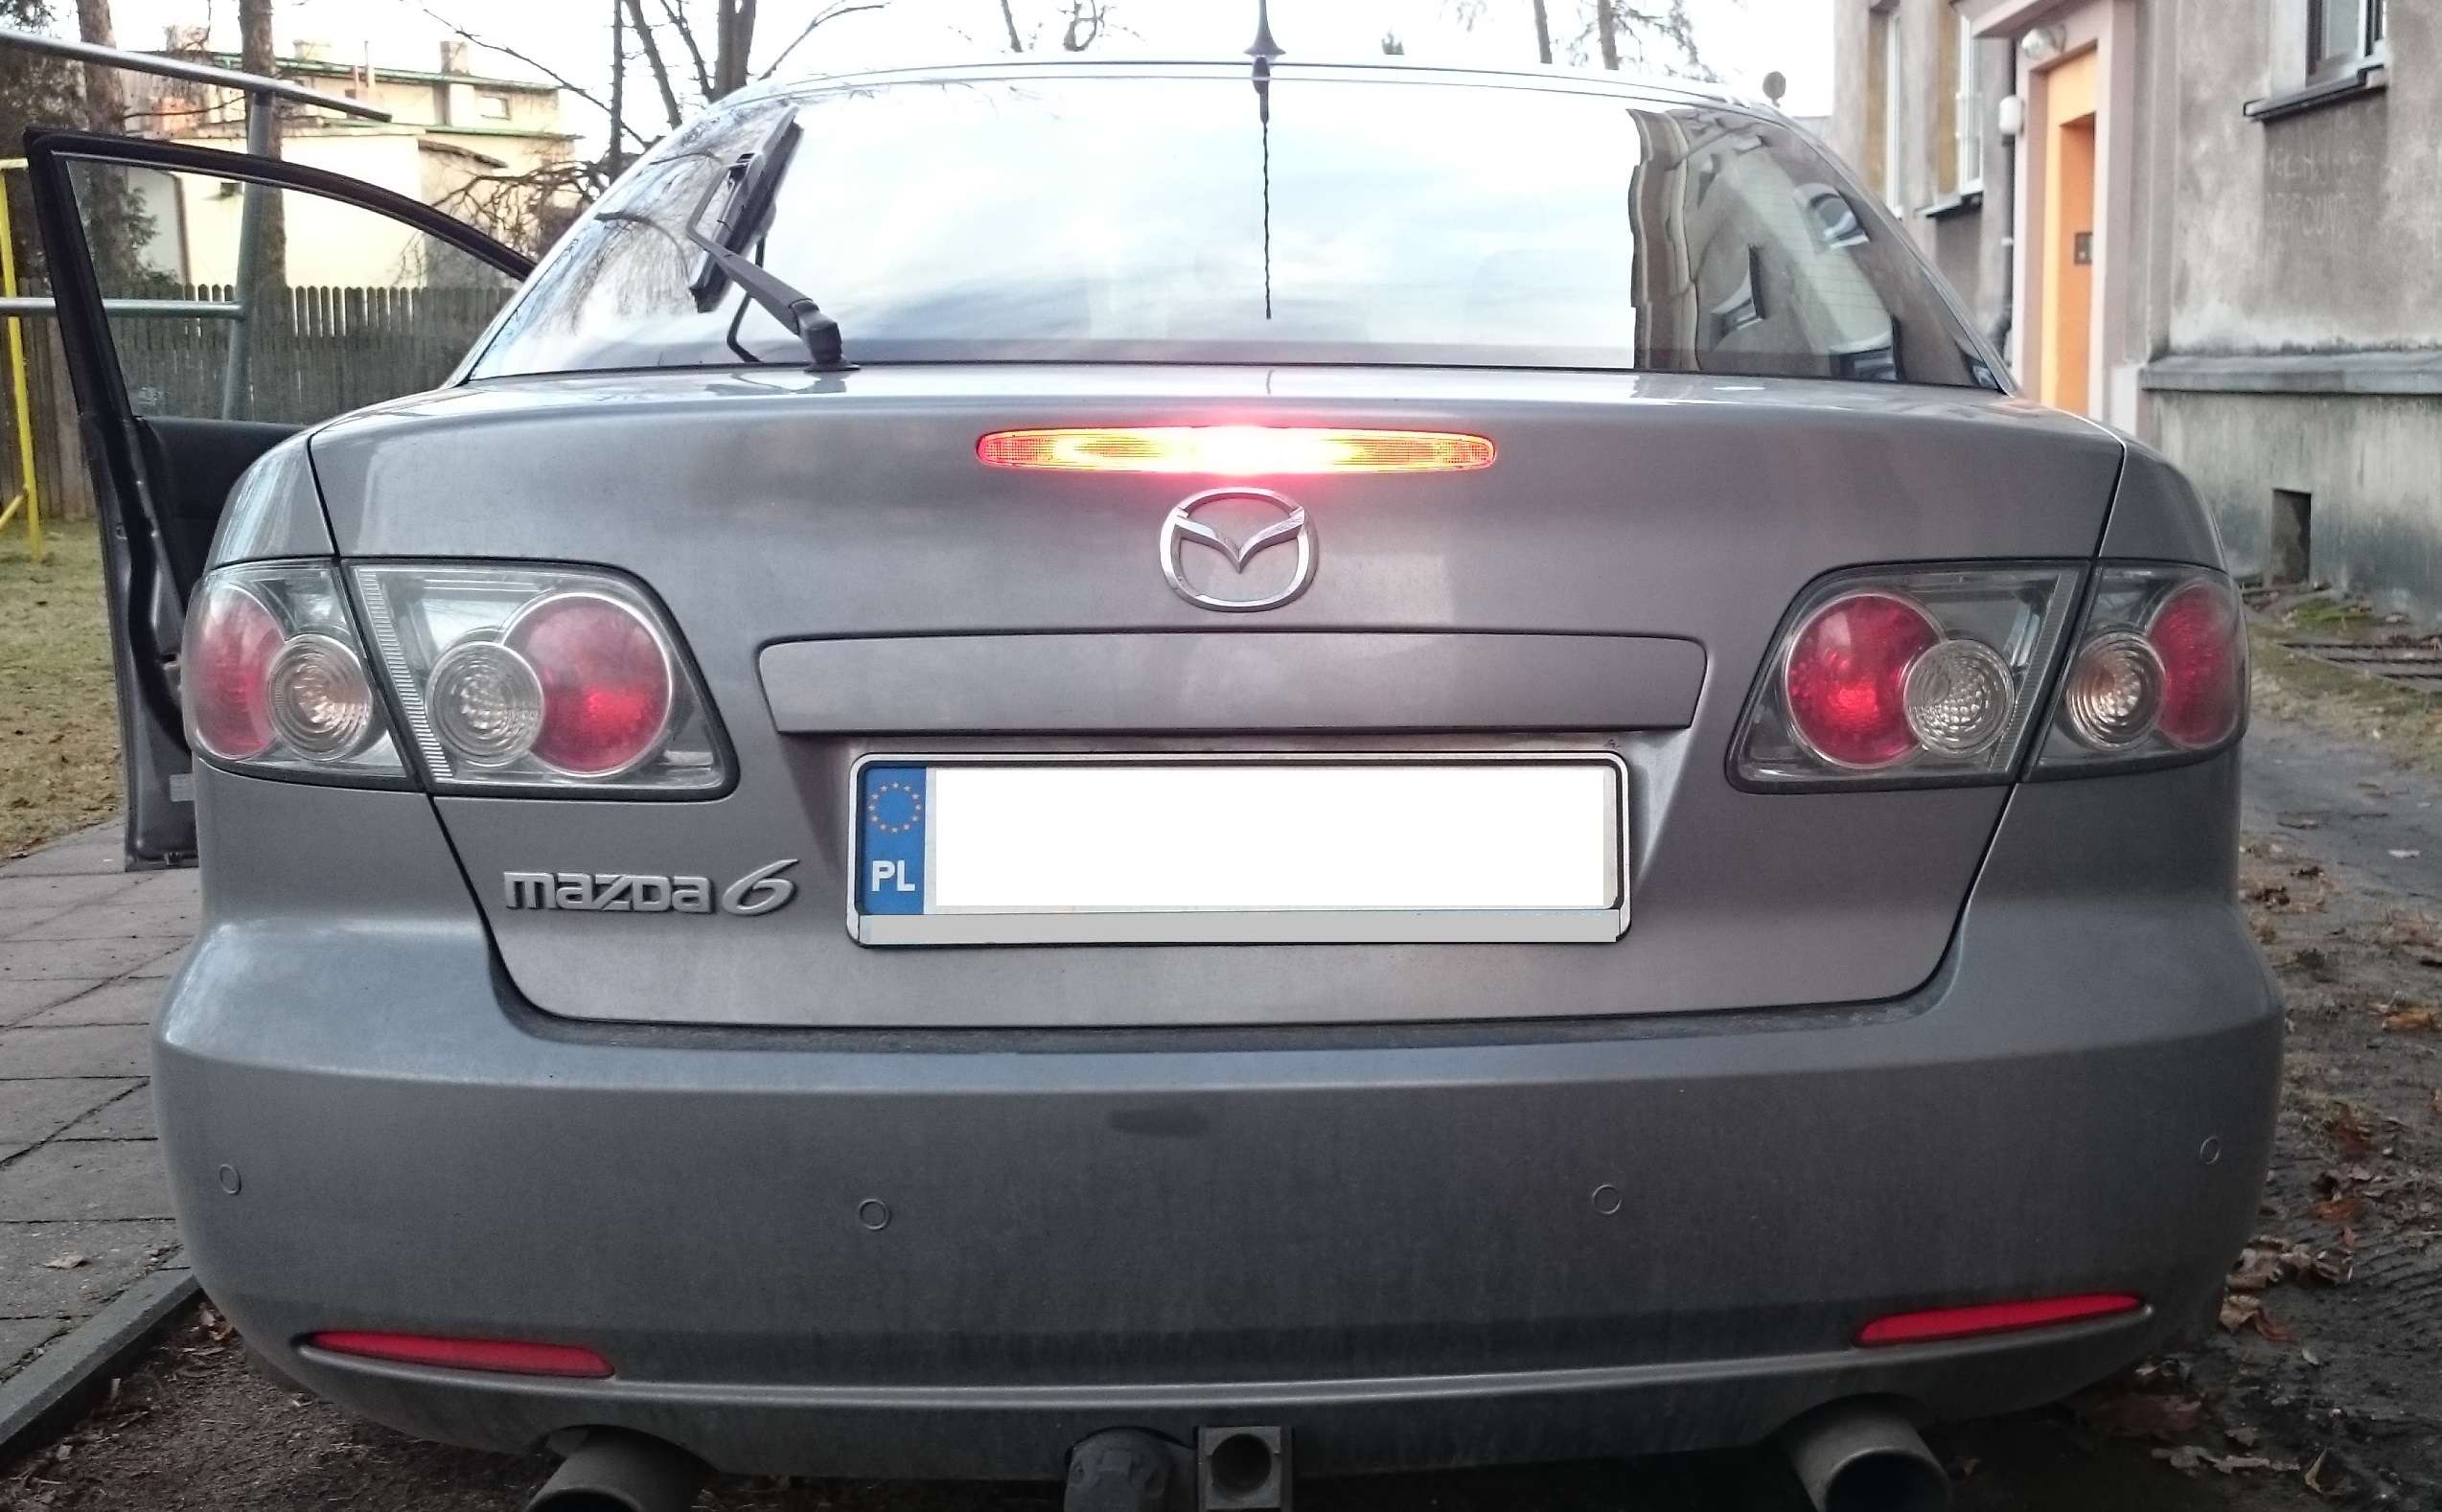 Mazda 6 - Brak Bocznych Świateł Stop Przy Działającym 3Cim Świetle • Blog Auta • Autowcentrum.pl